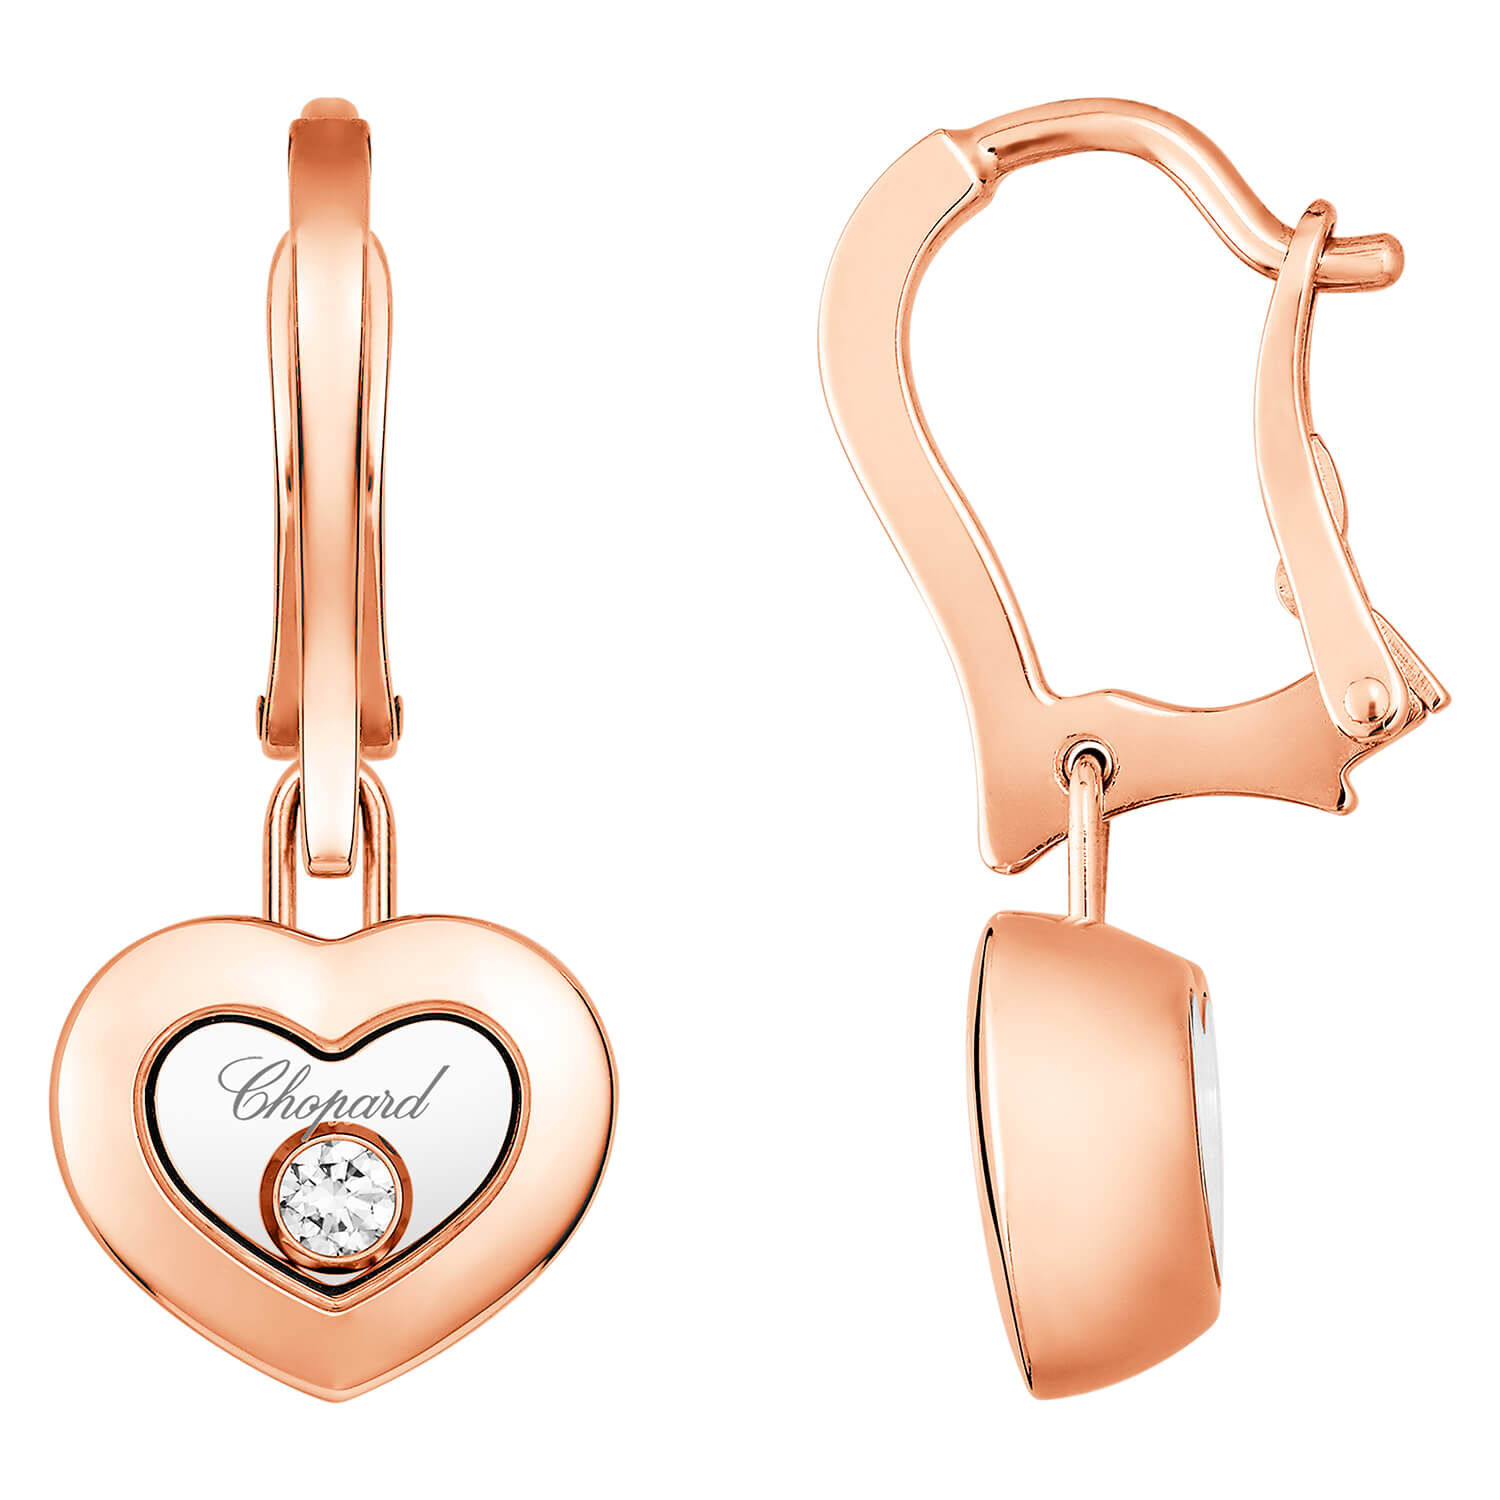 Shop Happy Hearts Earrings by Chopard  Its Luxury by Trafalgar